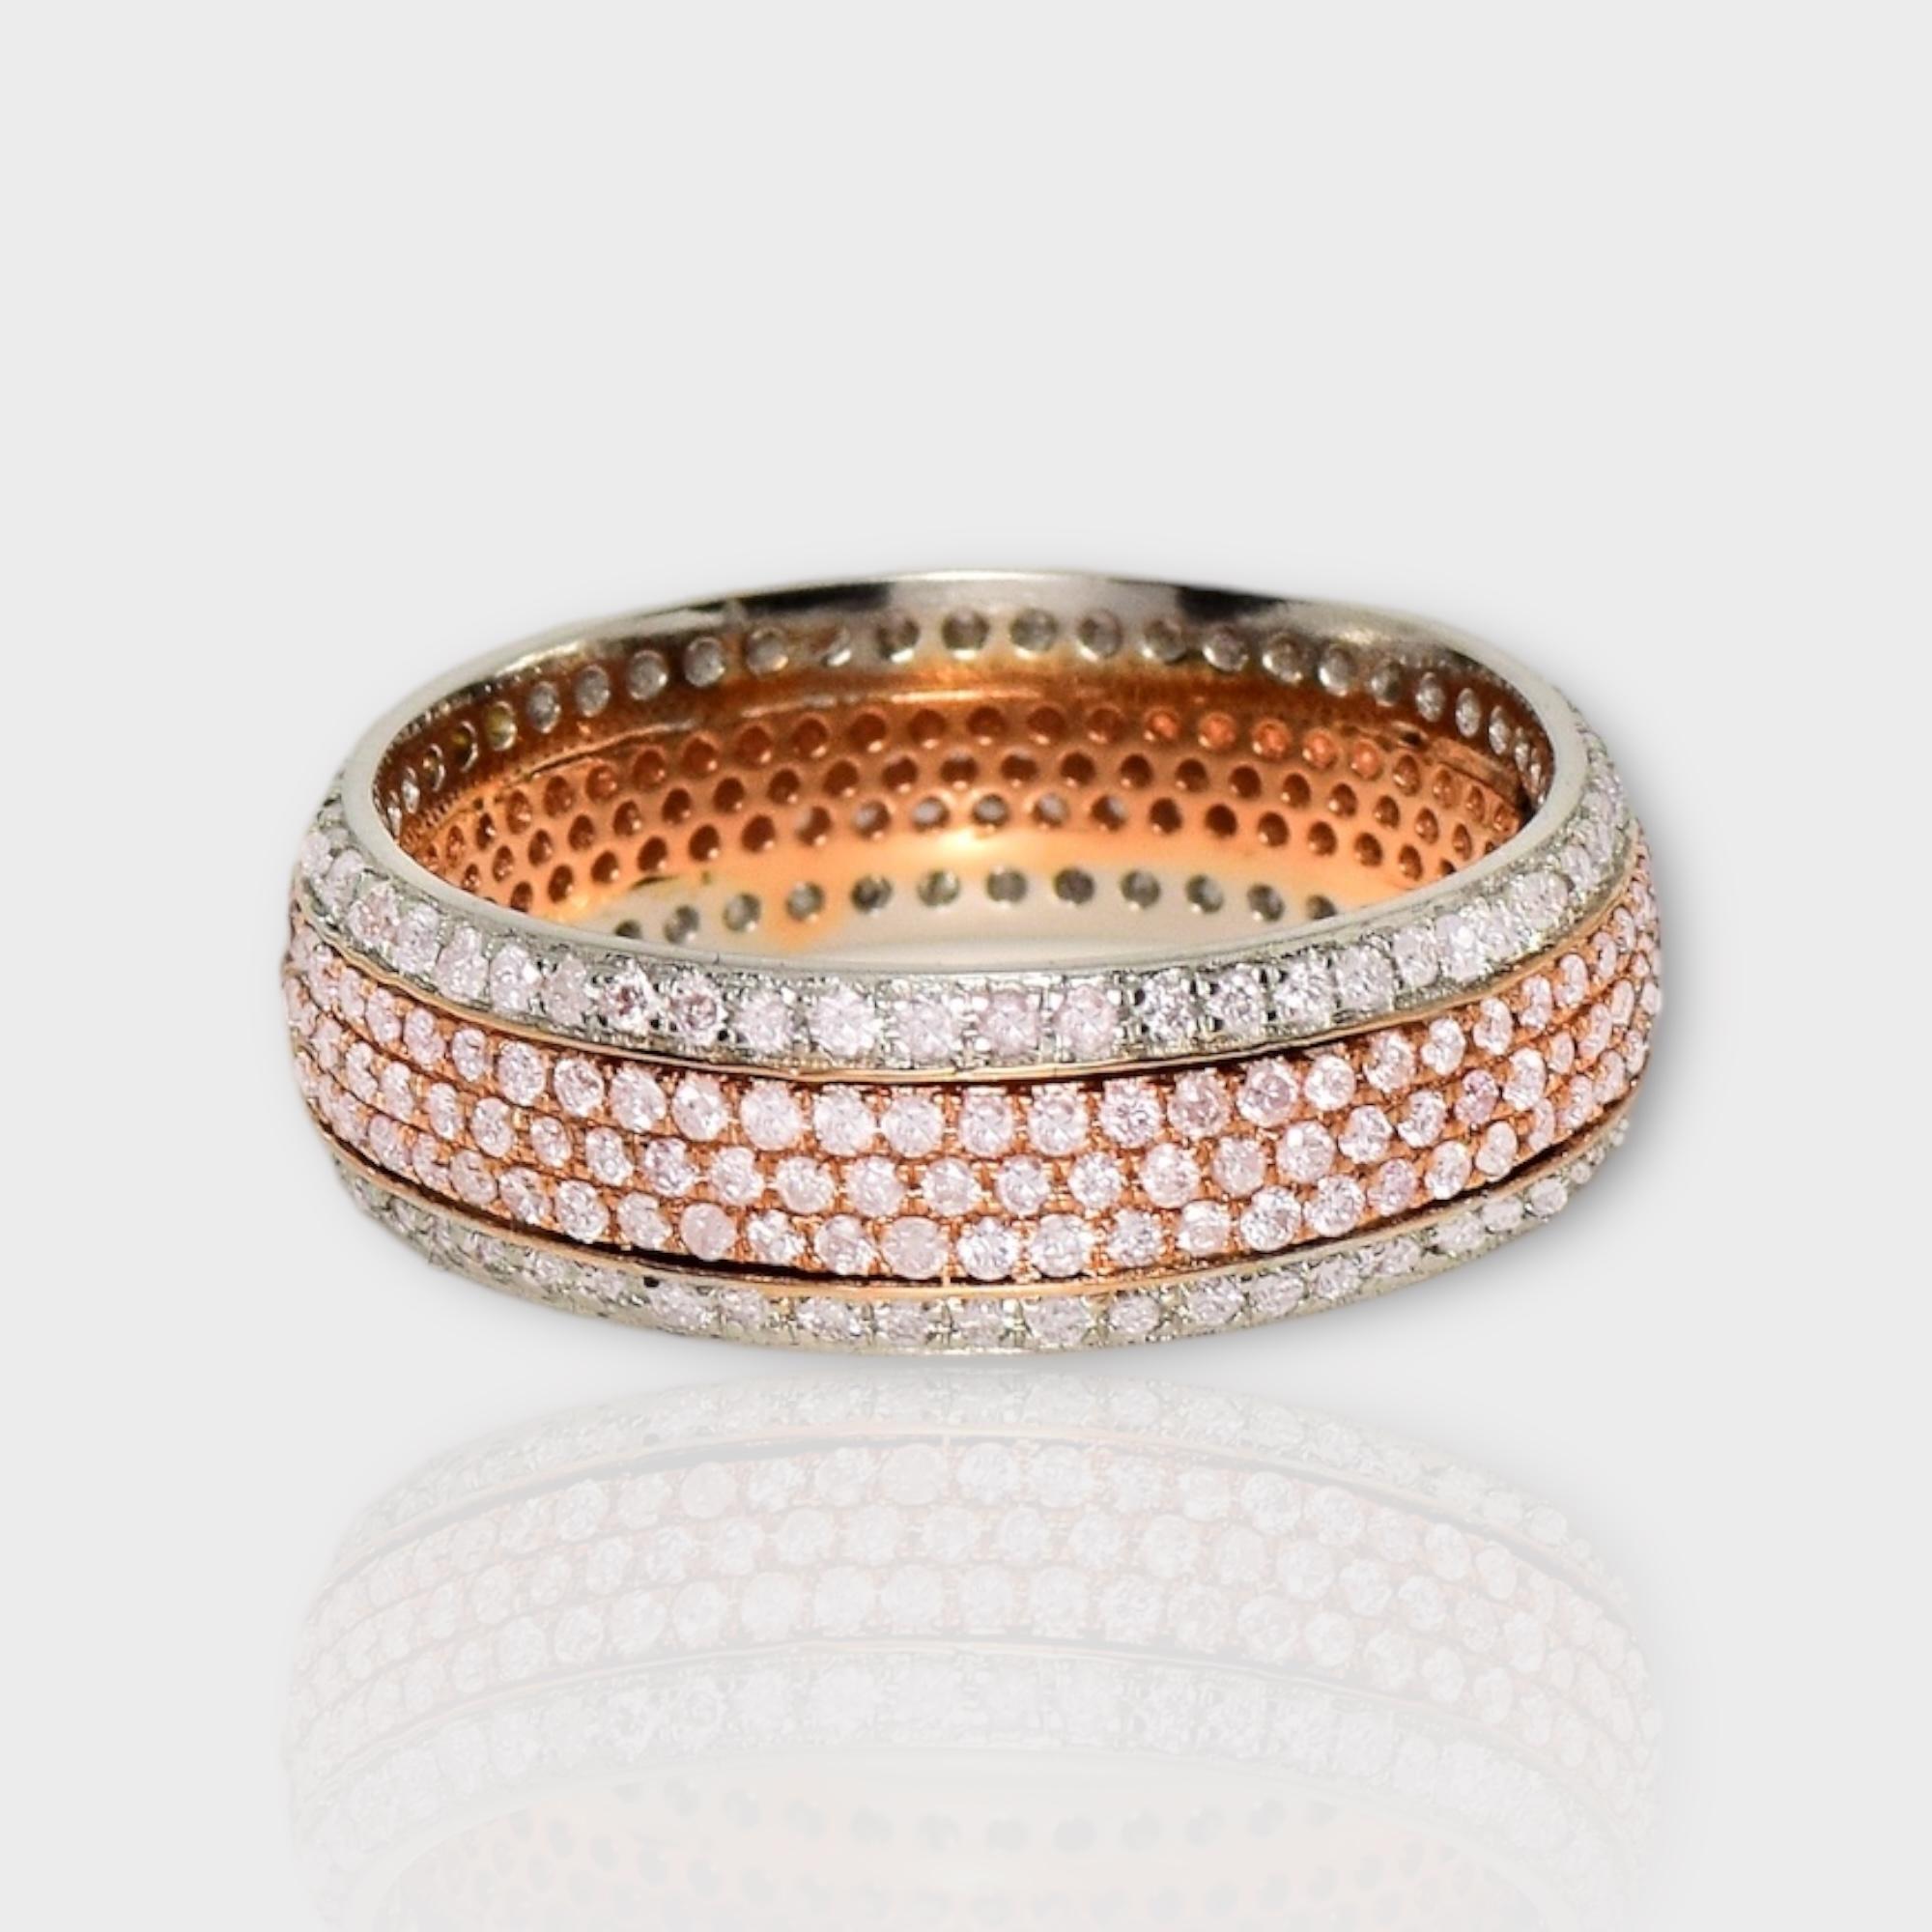 *14K 1.09 ct Natural Pink Diamonds&Diamonds Eternity Engagement Ring* (Bague de fiançailles éternelle)

Ce bracelet présente un superbe design éternel à 5 rangs avec des diamants roses naturels pesant 0,63 ct et des diamants FG VS naturels pesant